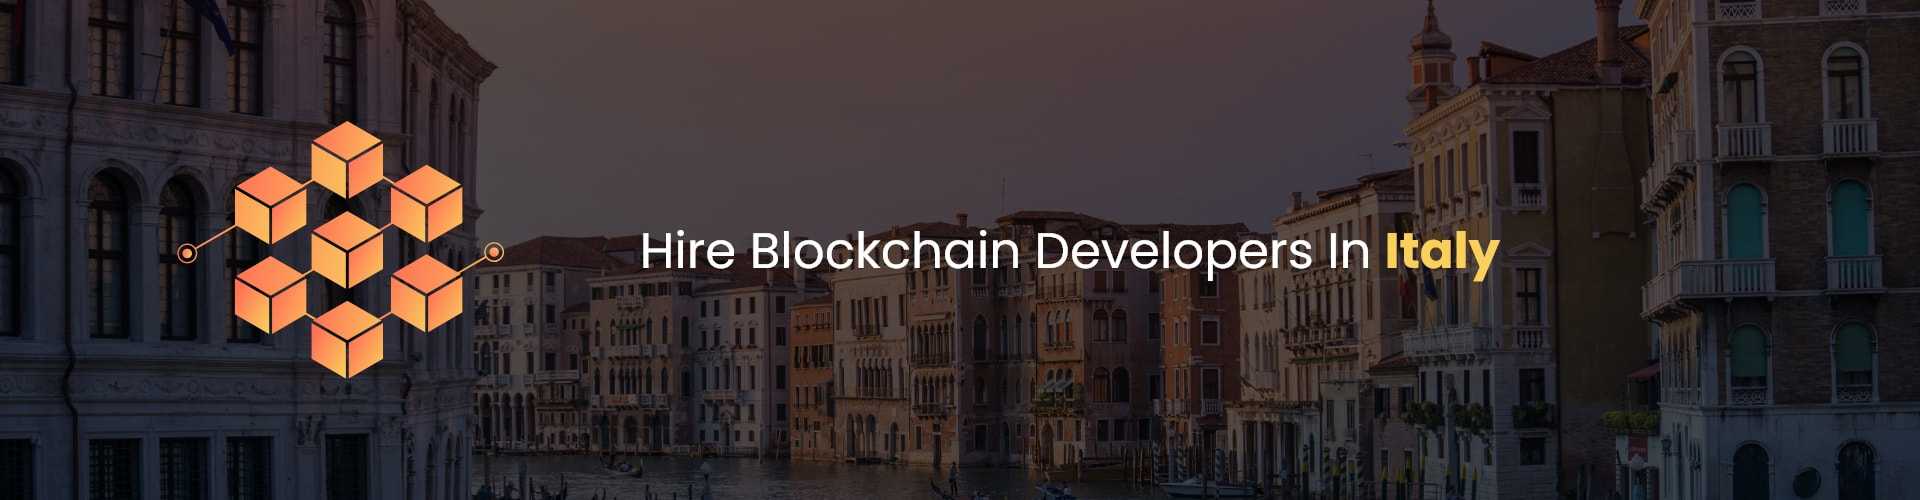 hire blockchain developers in itali